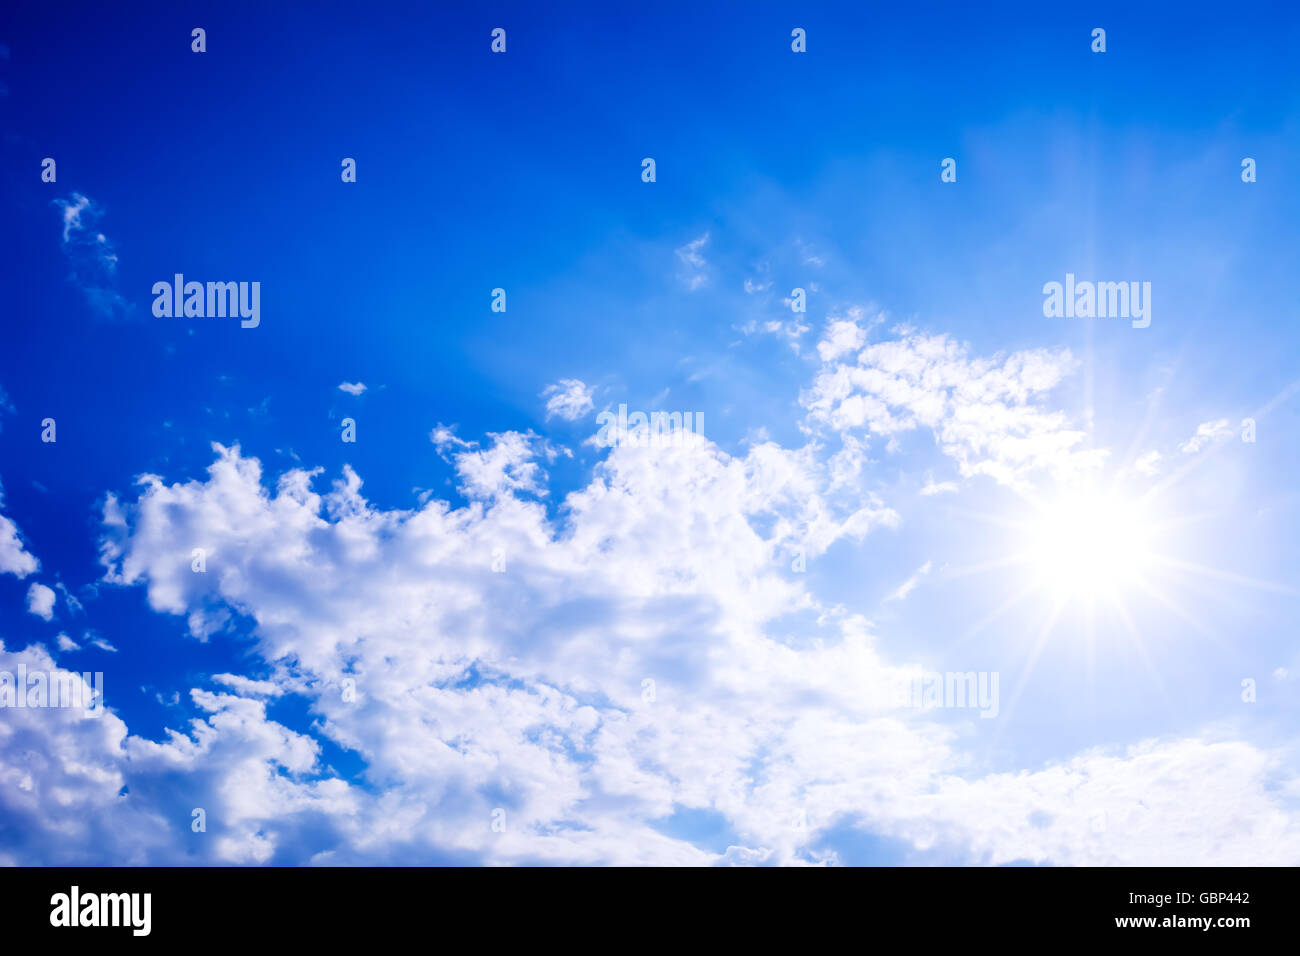 Un ciel bleu clair avec des nuages et des rayons de soleil. Beau fond de ciel bleu nuageux Banque D'Images